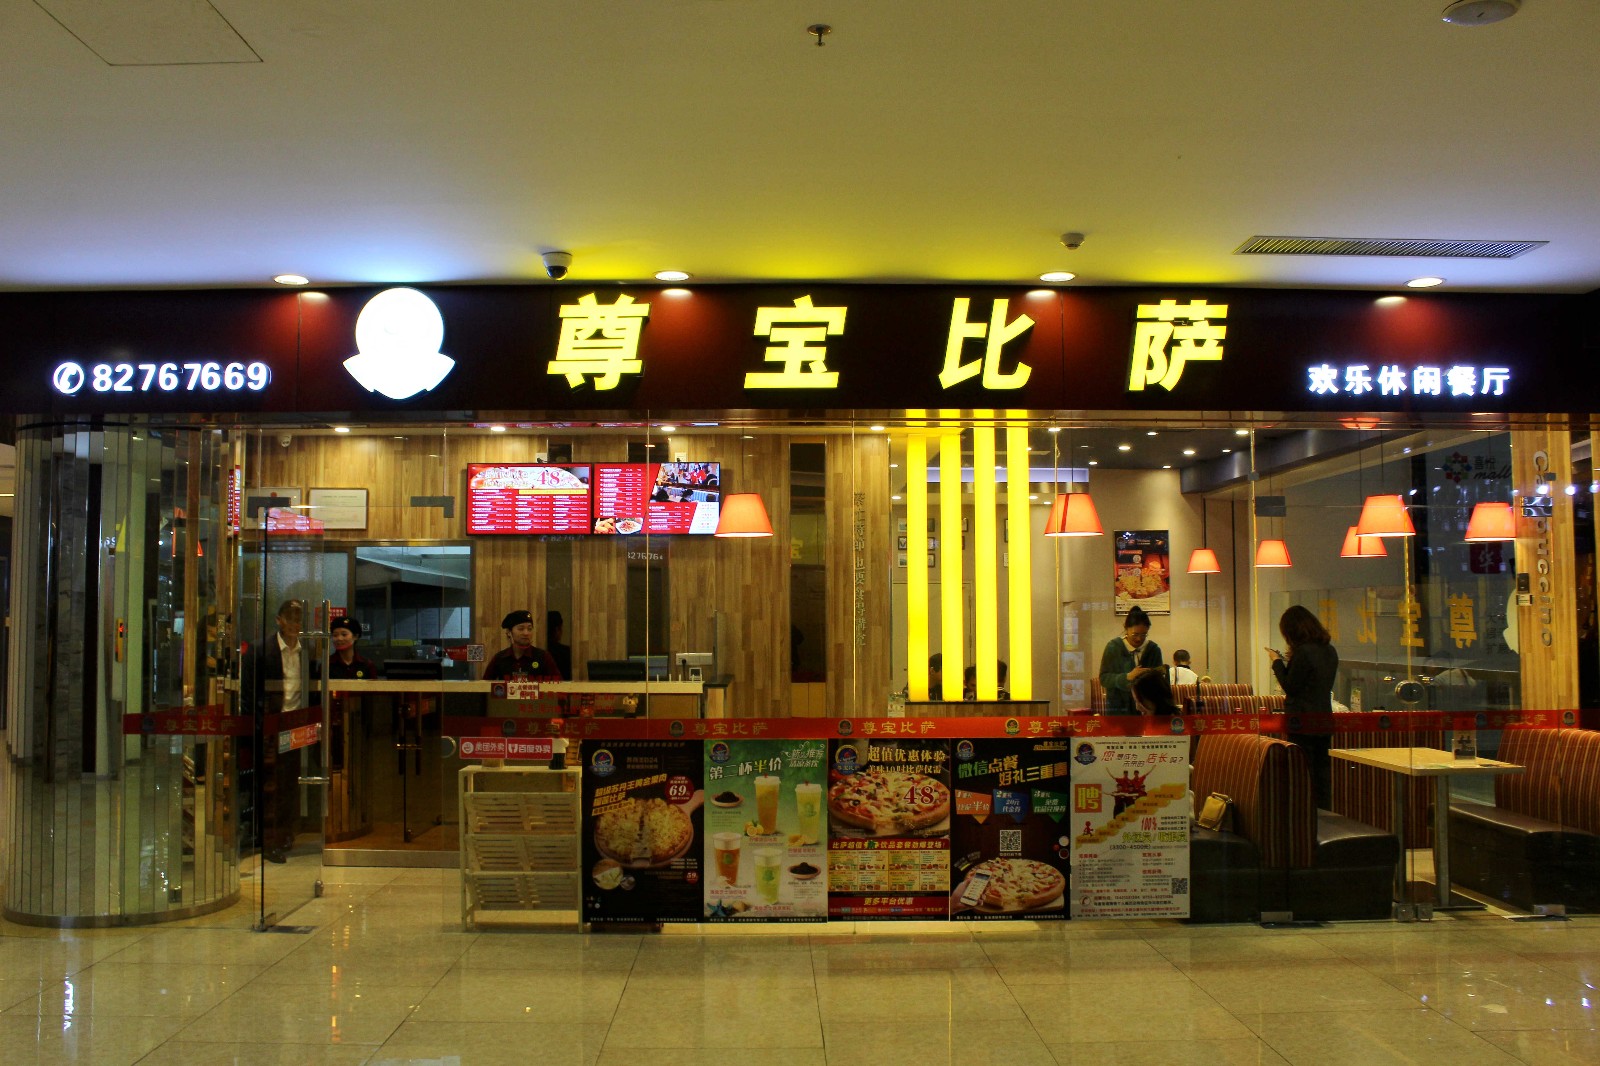 尊宝比萨起源于意大利那不勒斯,1998年的时候,在深圳开办了第一家门店